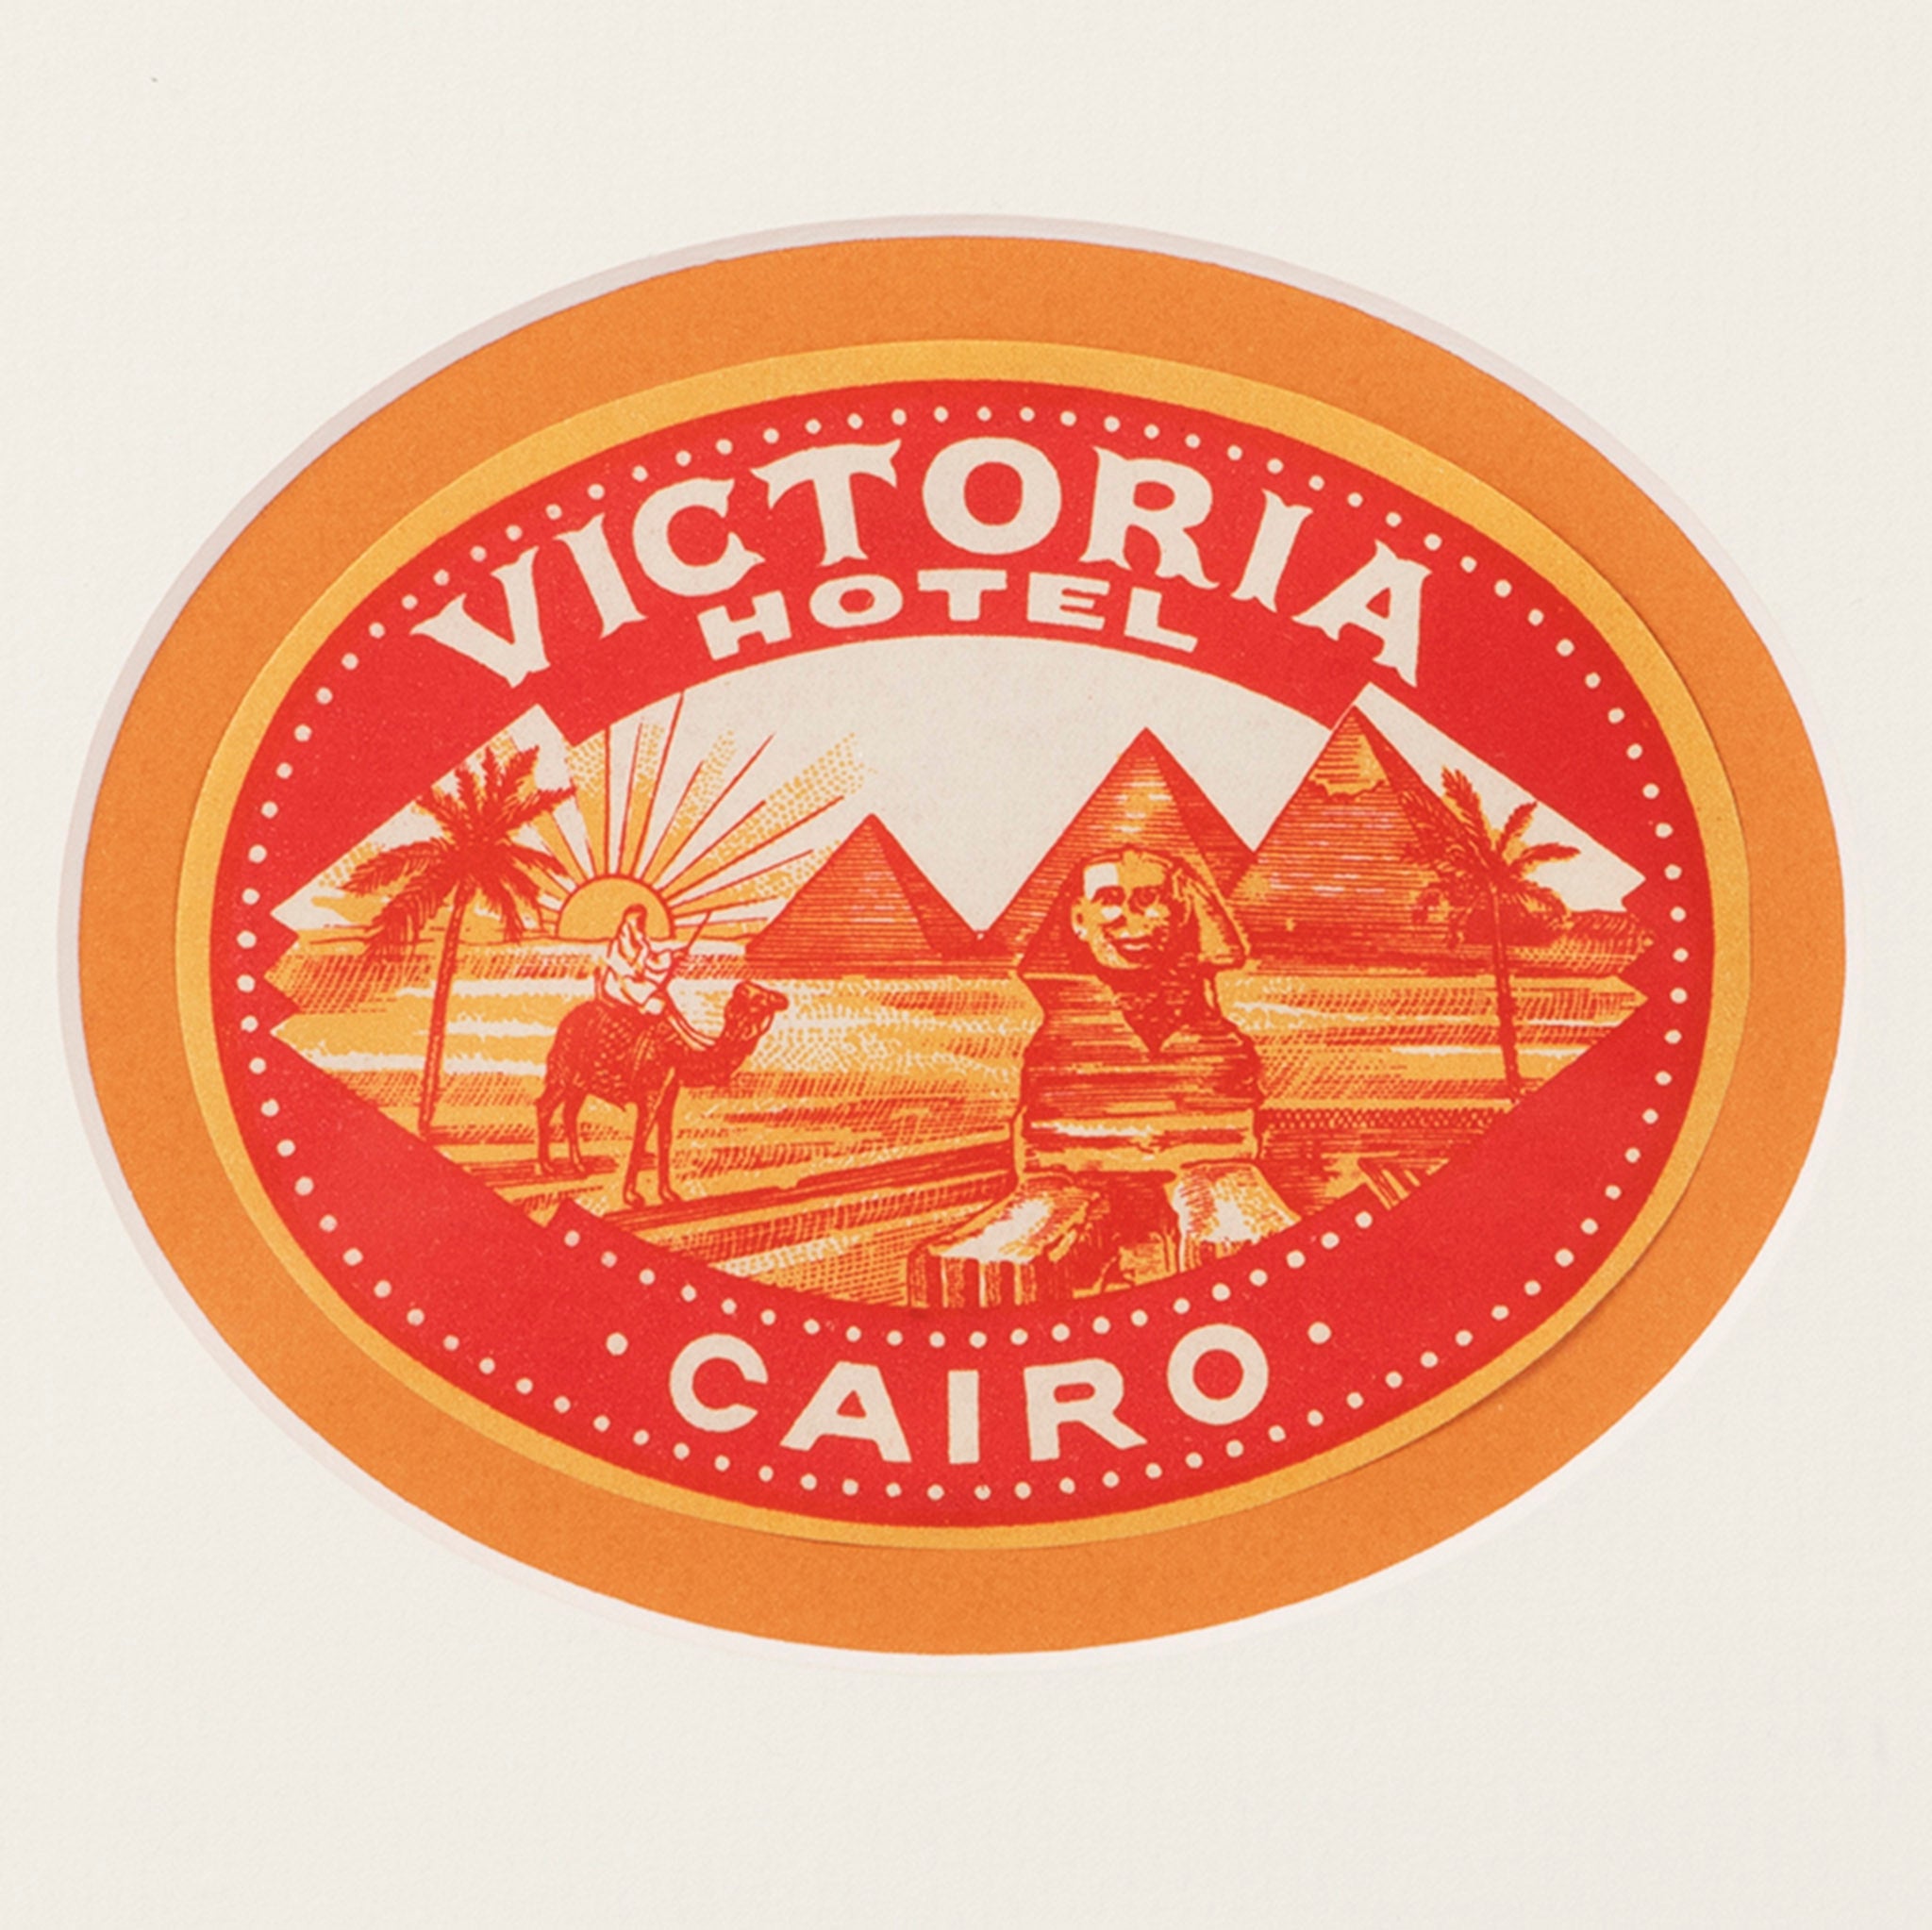 Hotel Victoria Cairo Luggage Label